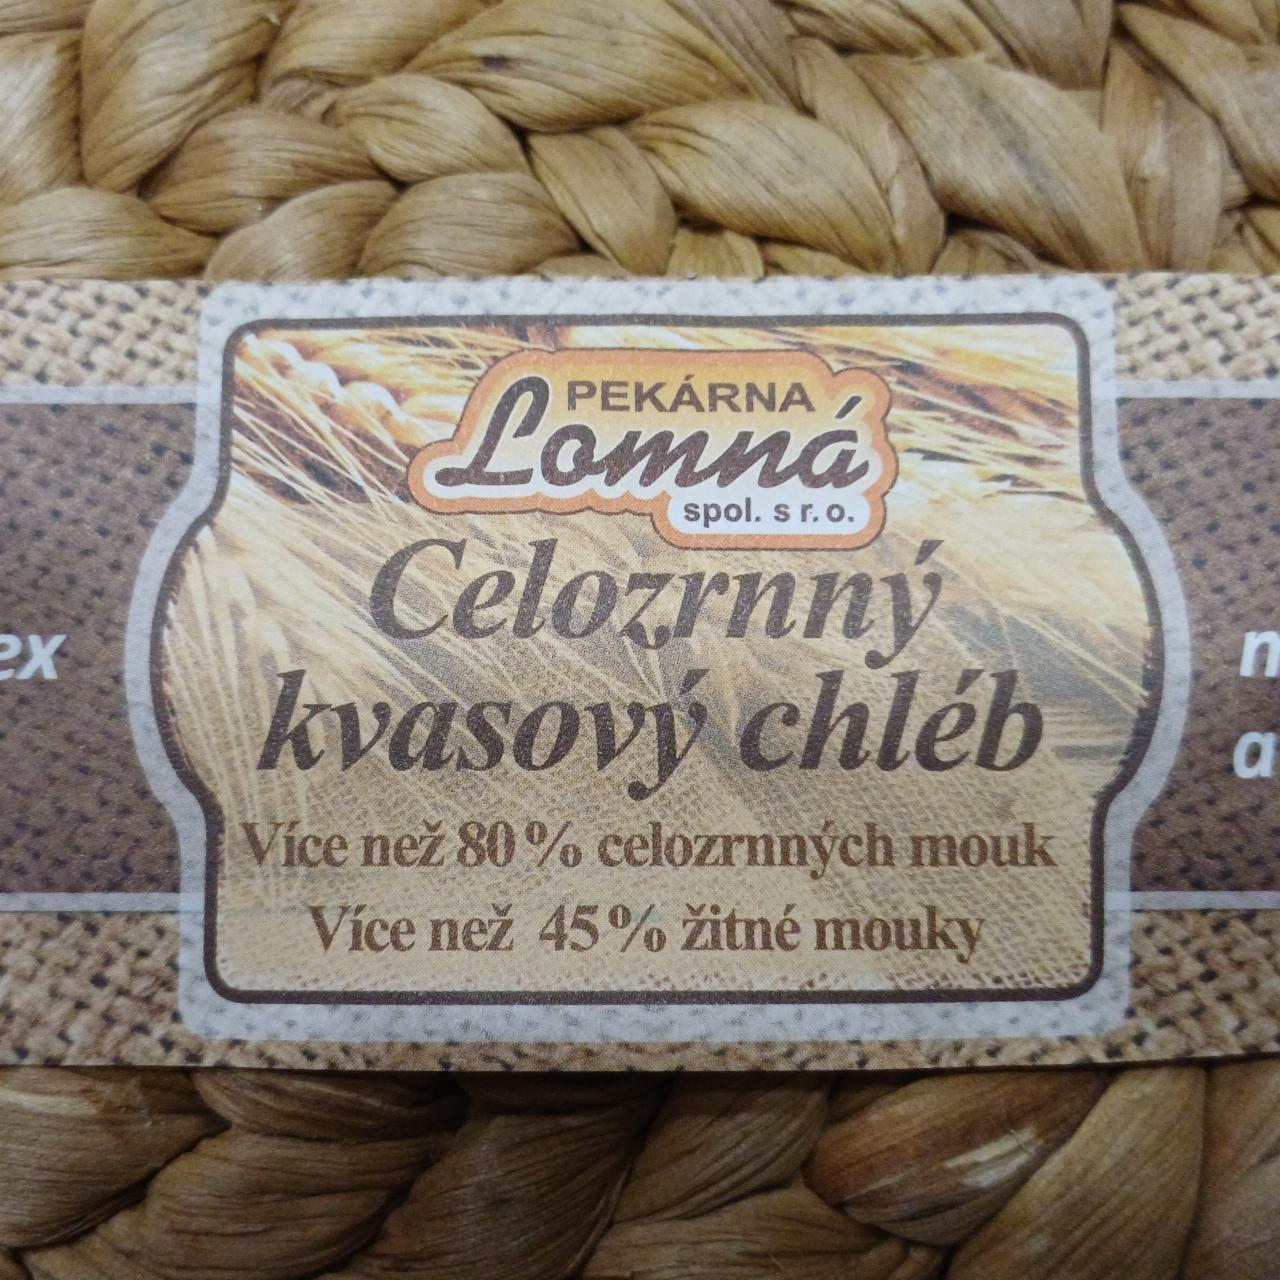 Fotografie - Celozrnný kvasový chléb Pekárna Lomná